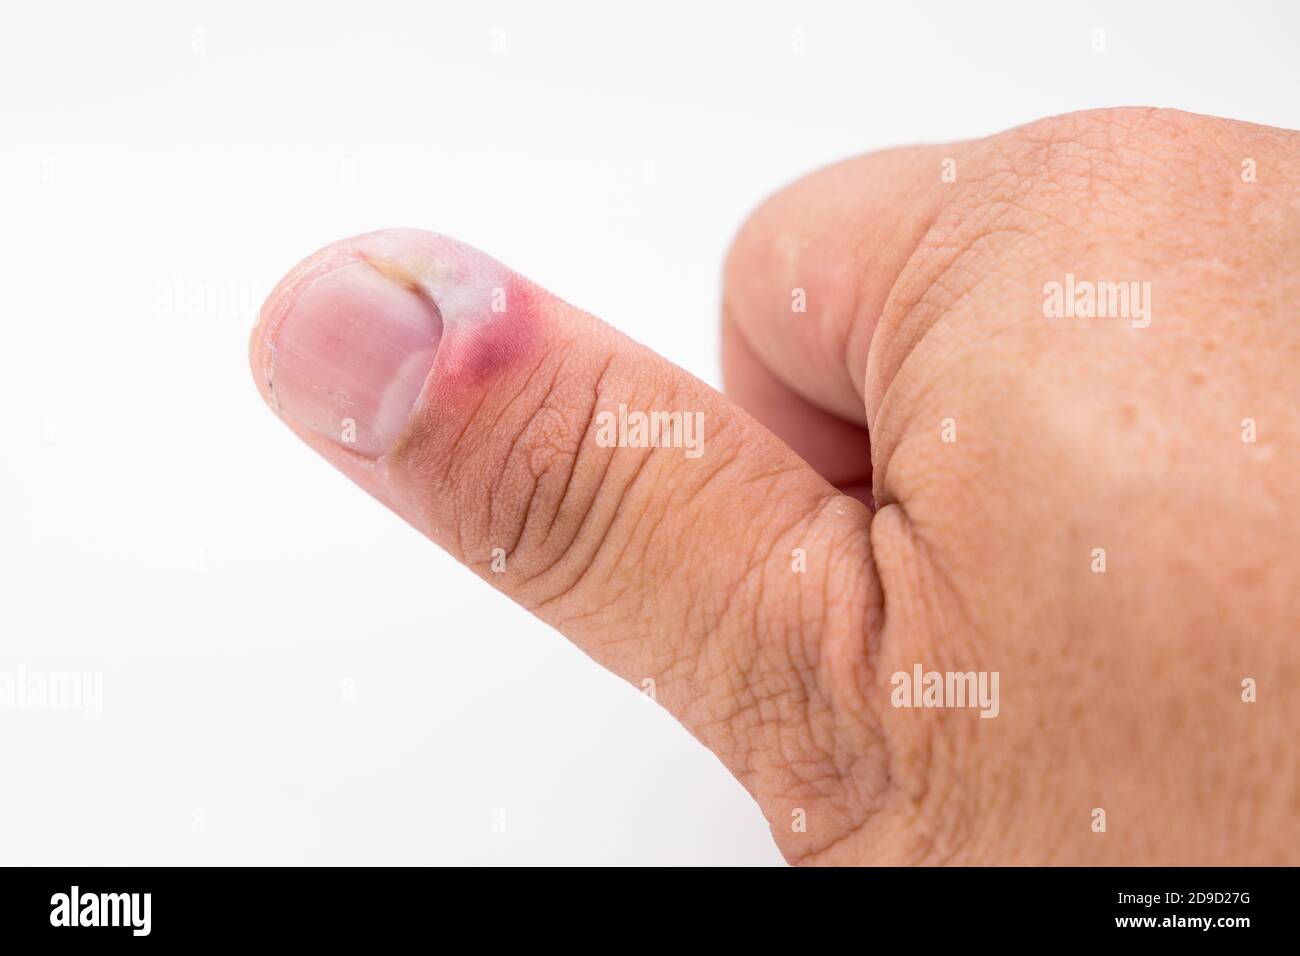 Serie de infección dolorosa de la piel de la uña del dedo con tratamiento del pus Foto de stock